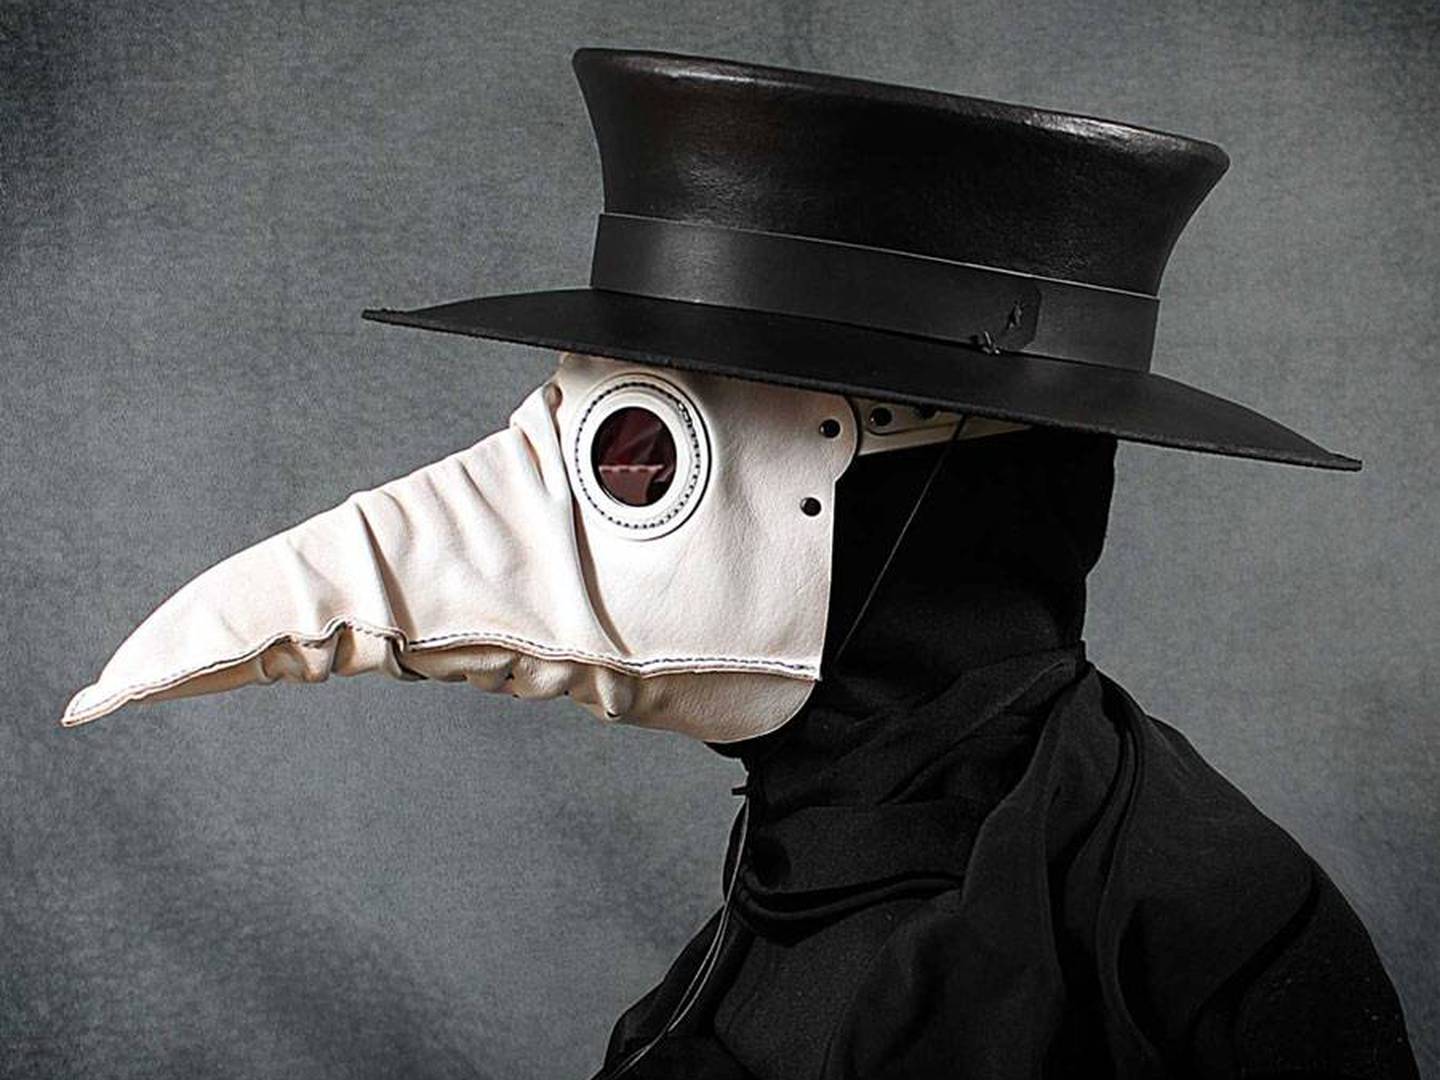 Así evolucionó la máscara del doctor de la peste